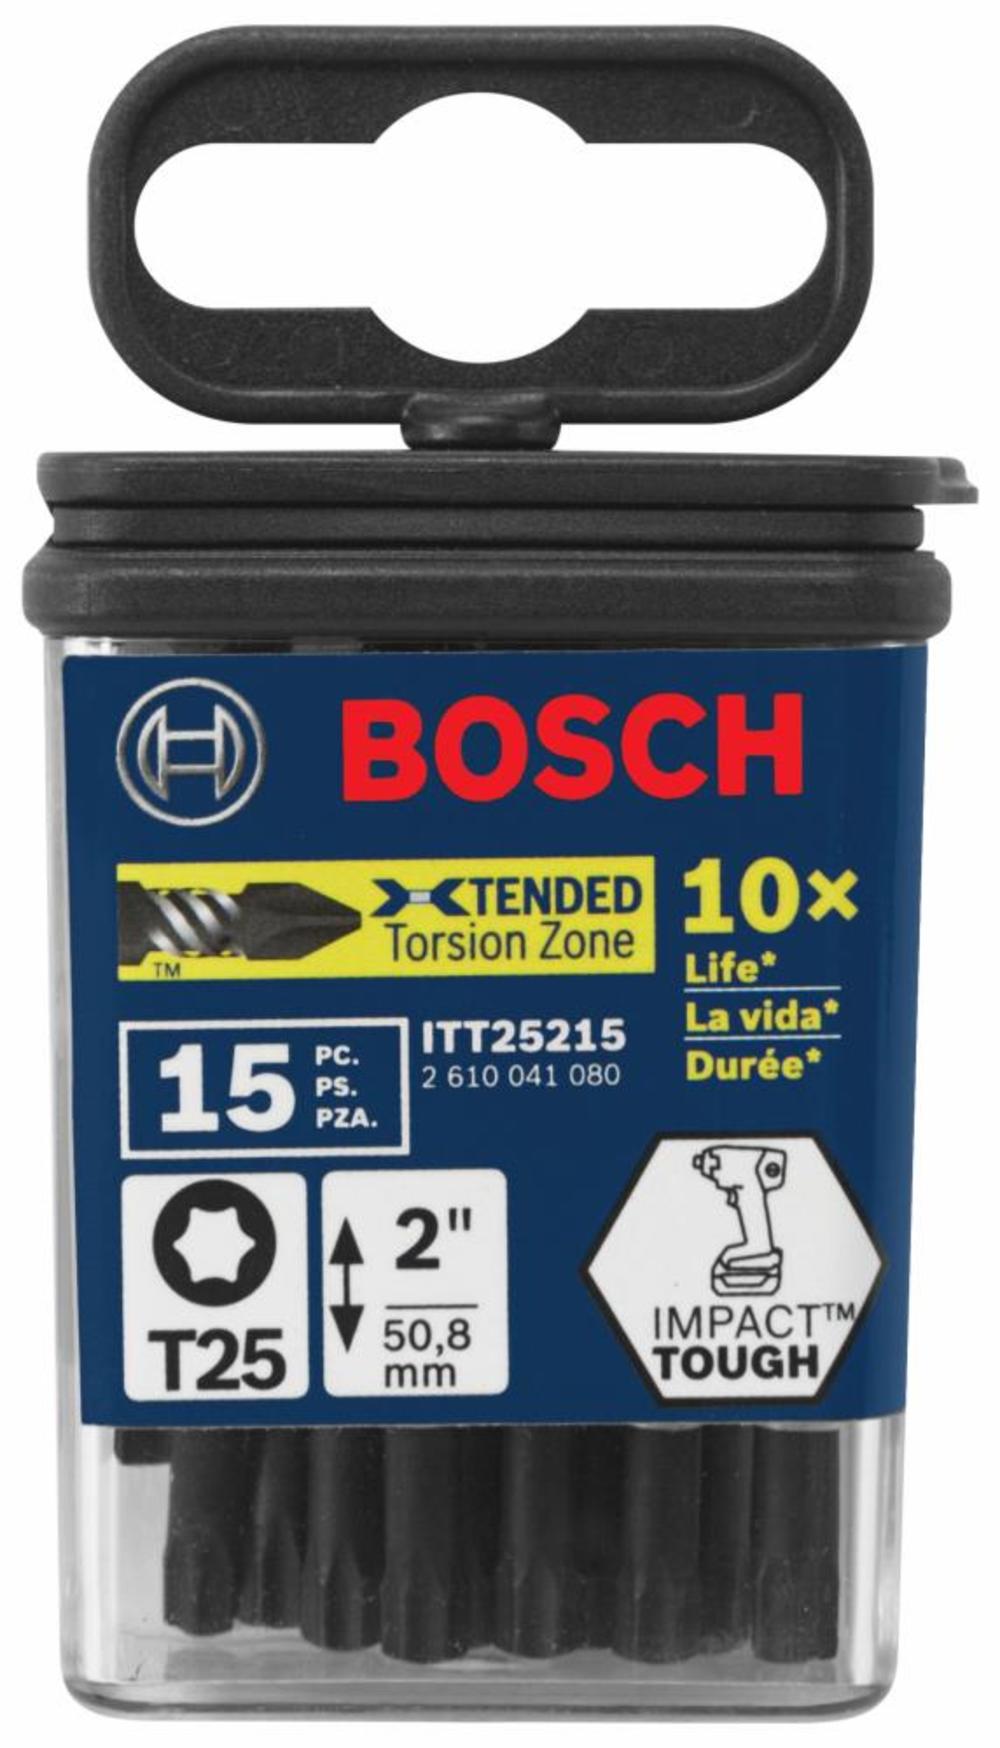 Bosch 15 Pack of Impact Tough 2 Inch Torx #25 Power Bits # ITT25215